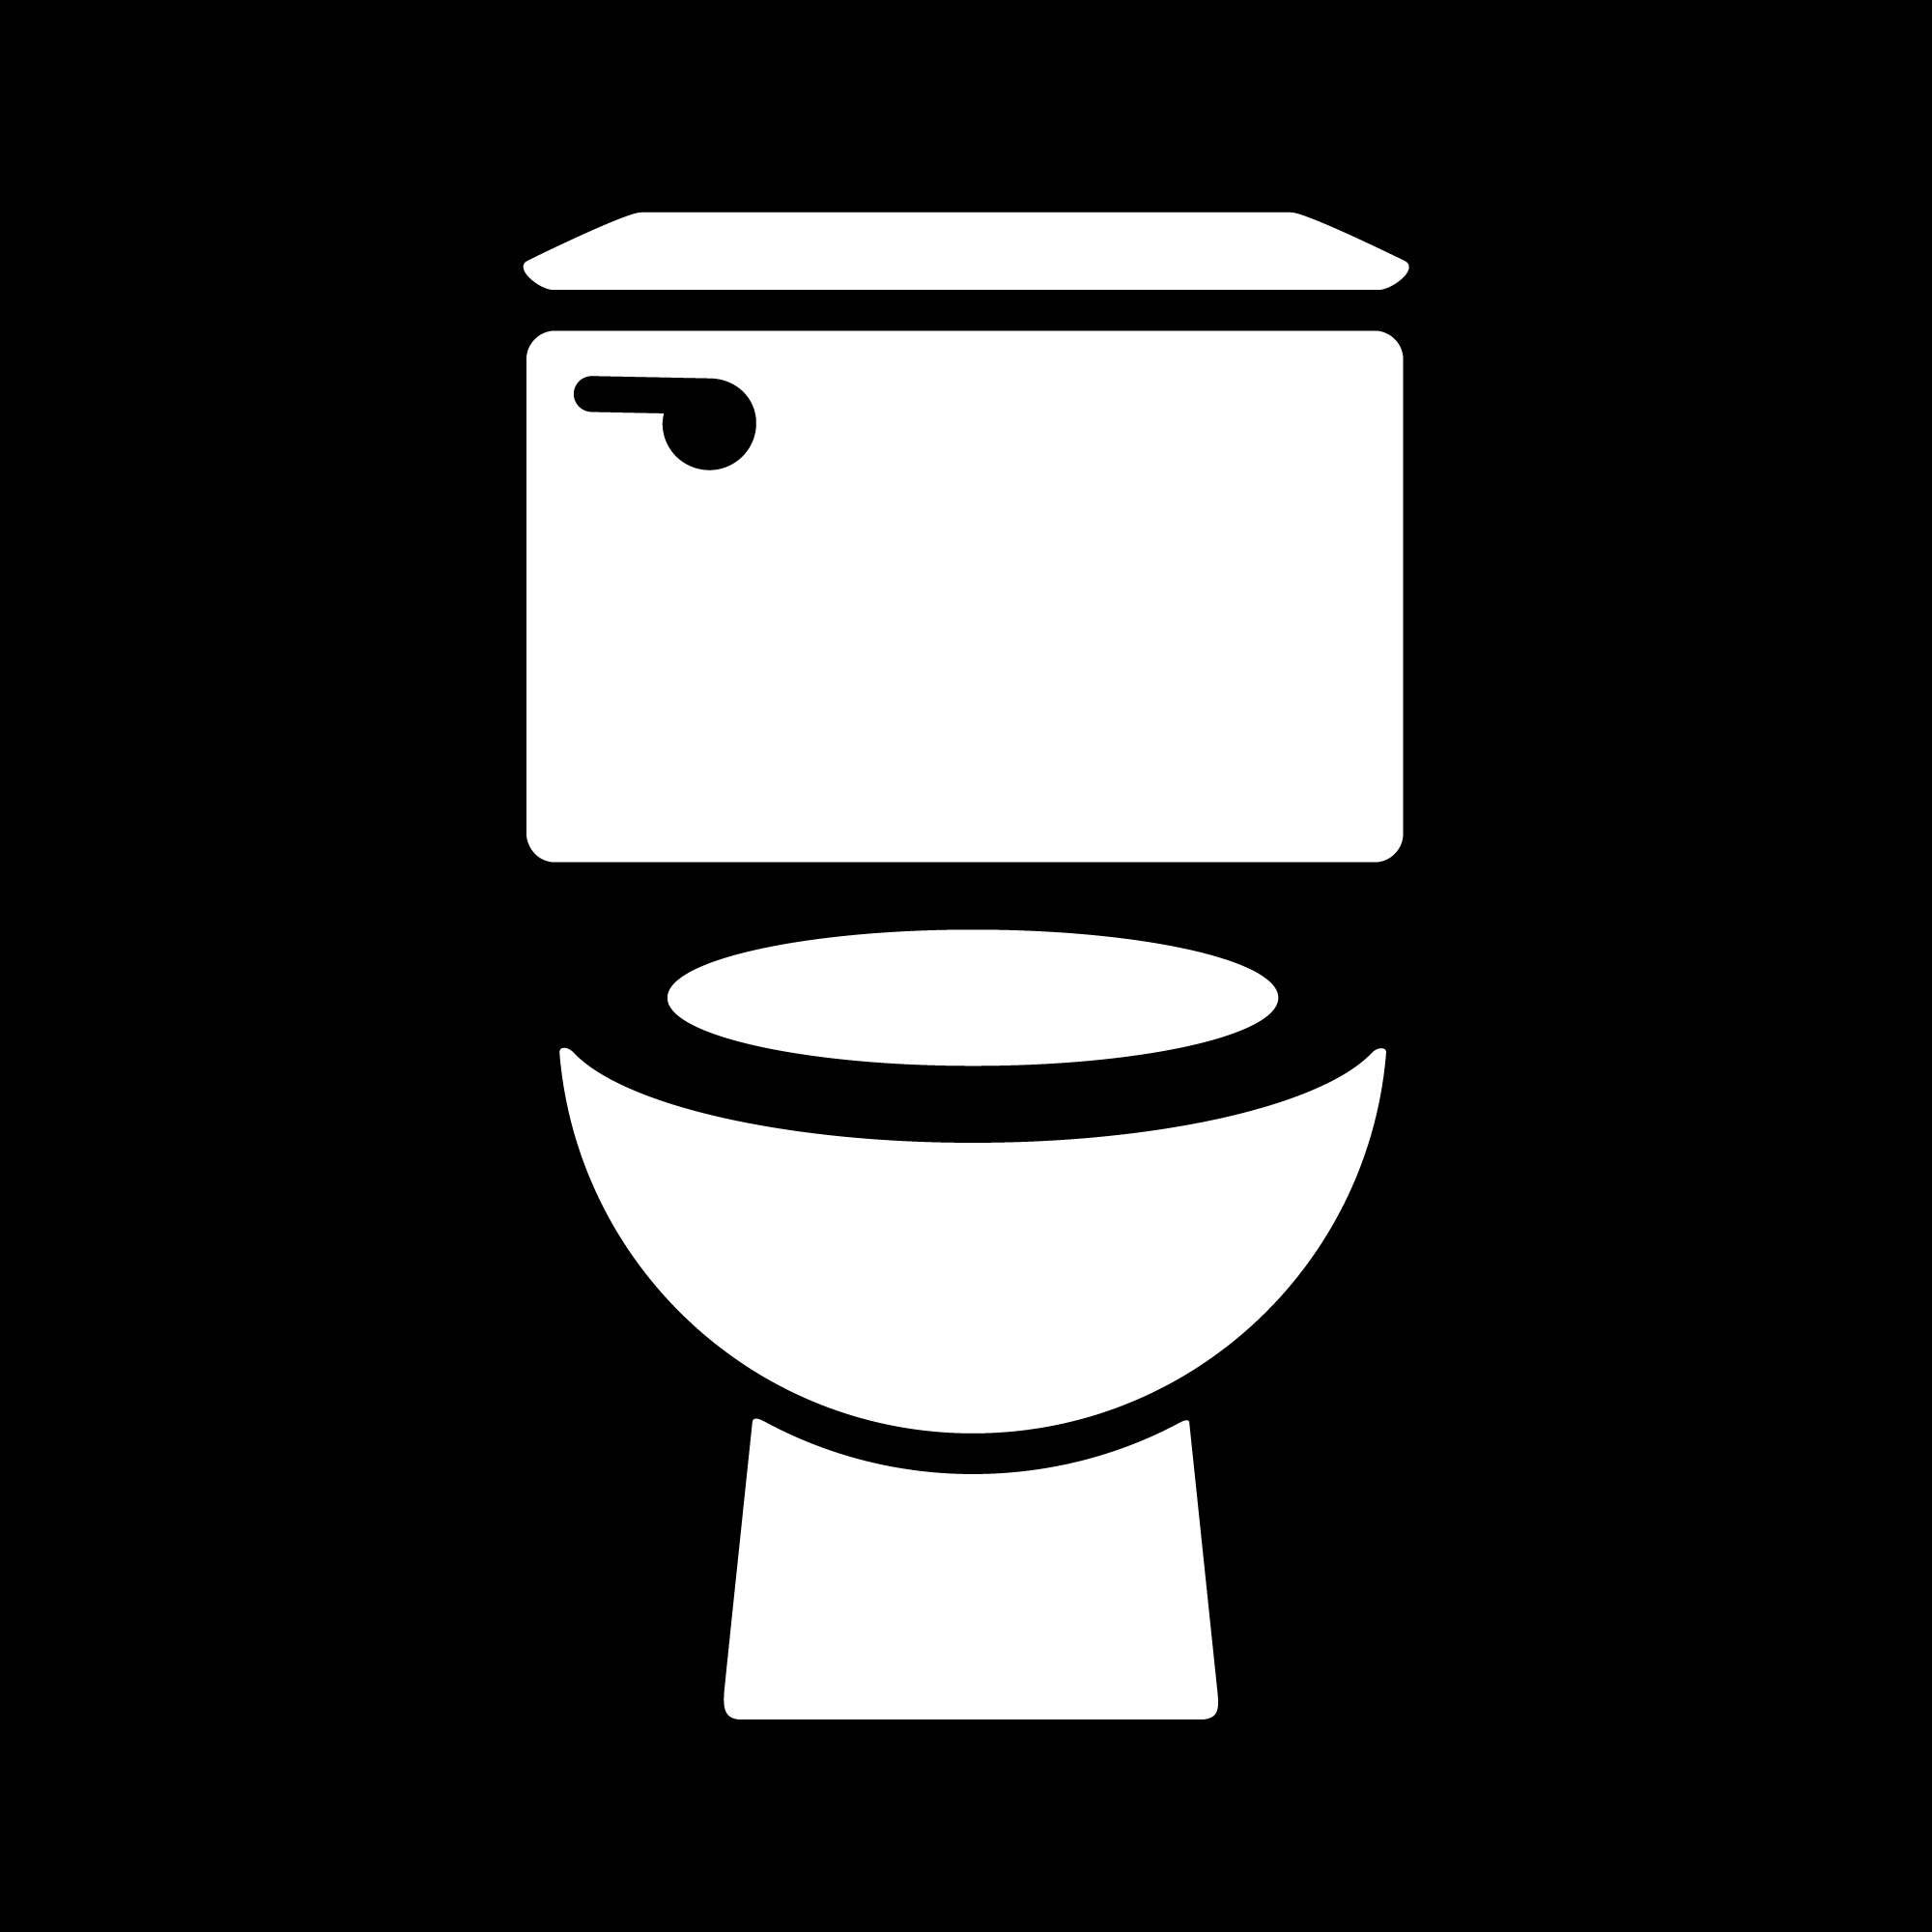 Туалет картинки. Значок туалета. Унитаз пиктограмма. Туалет логотип. Векторный туалет.